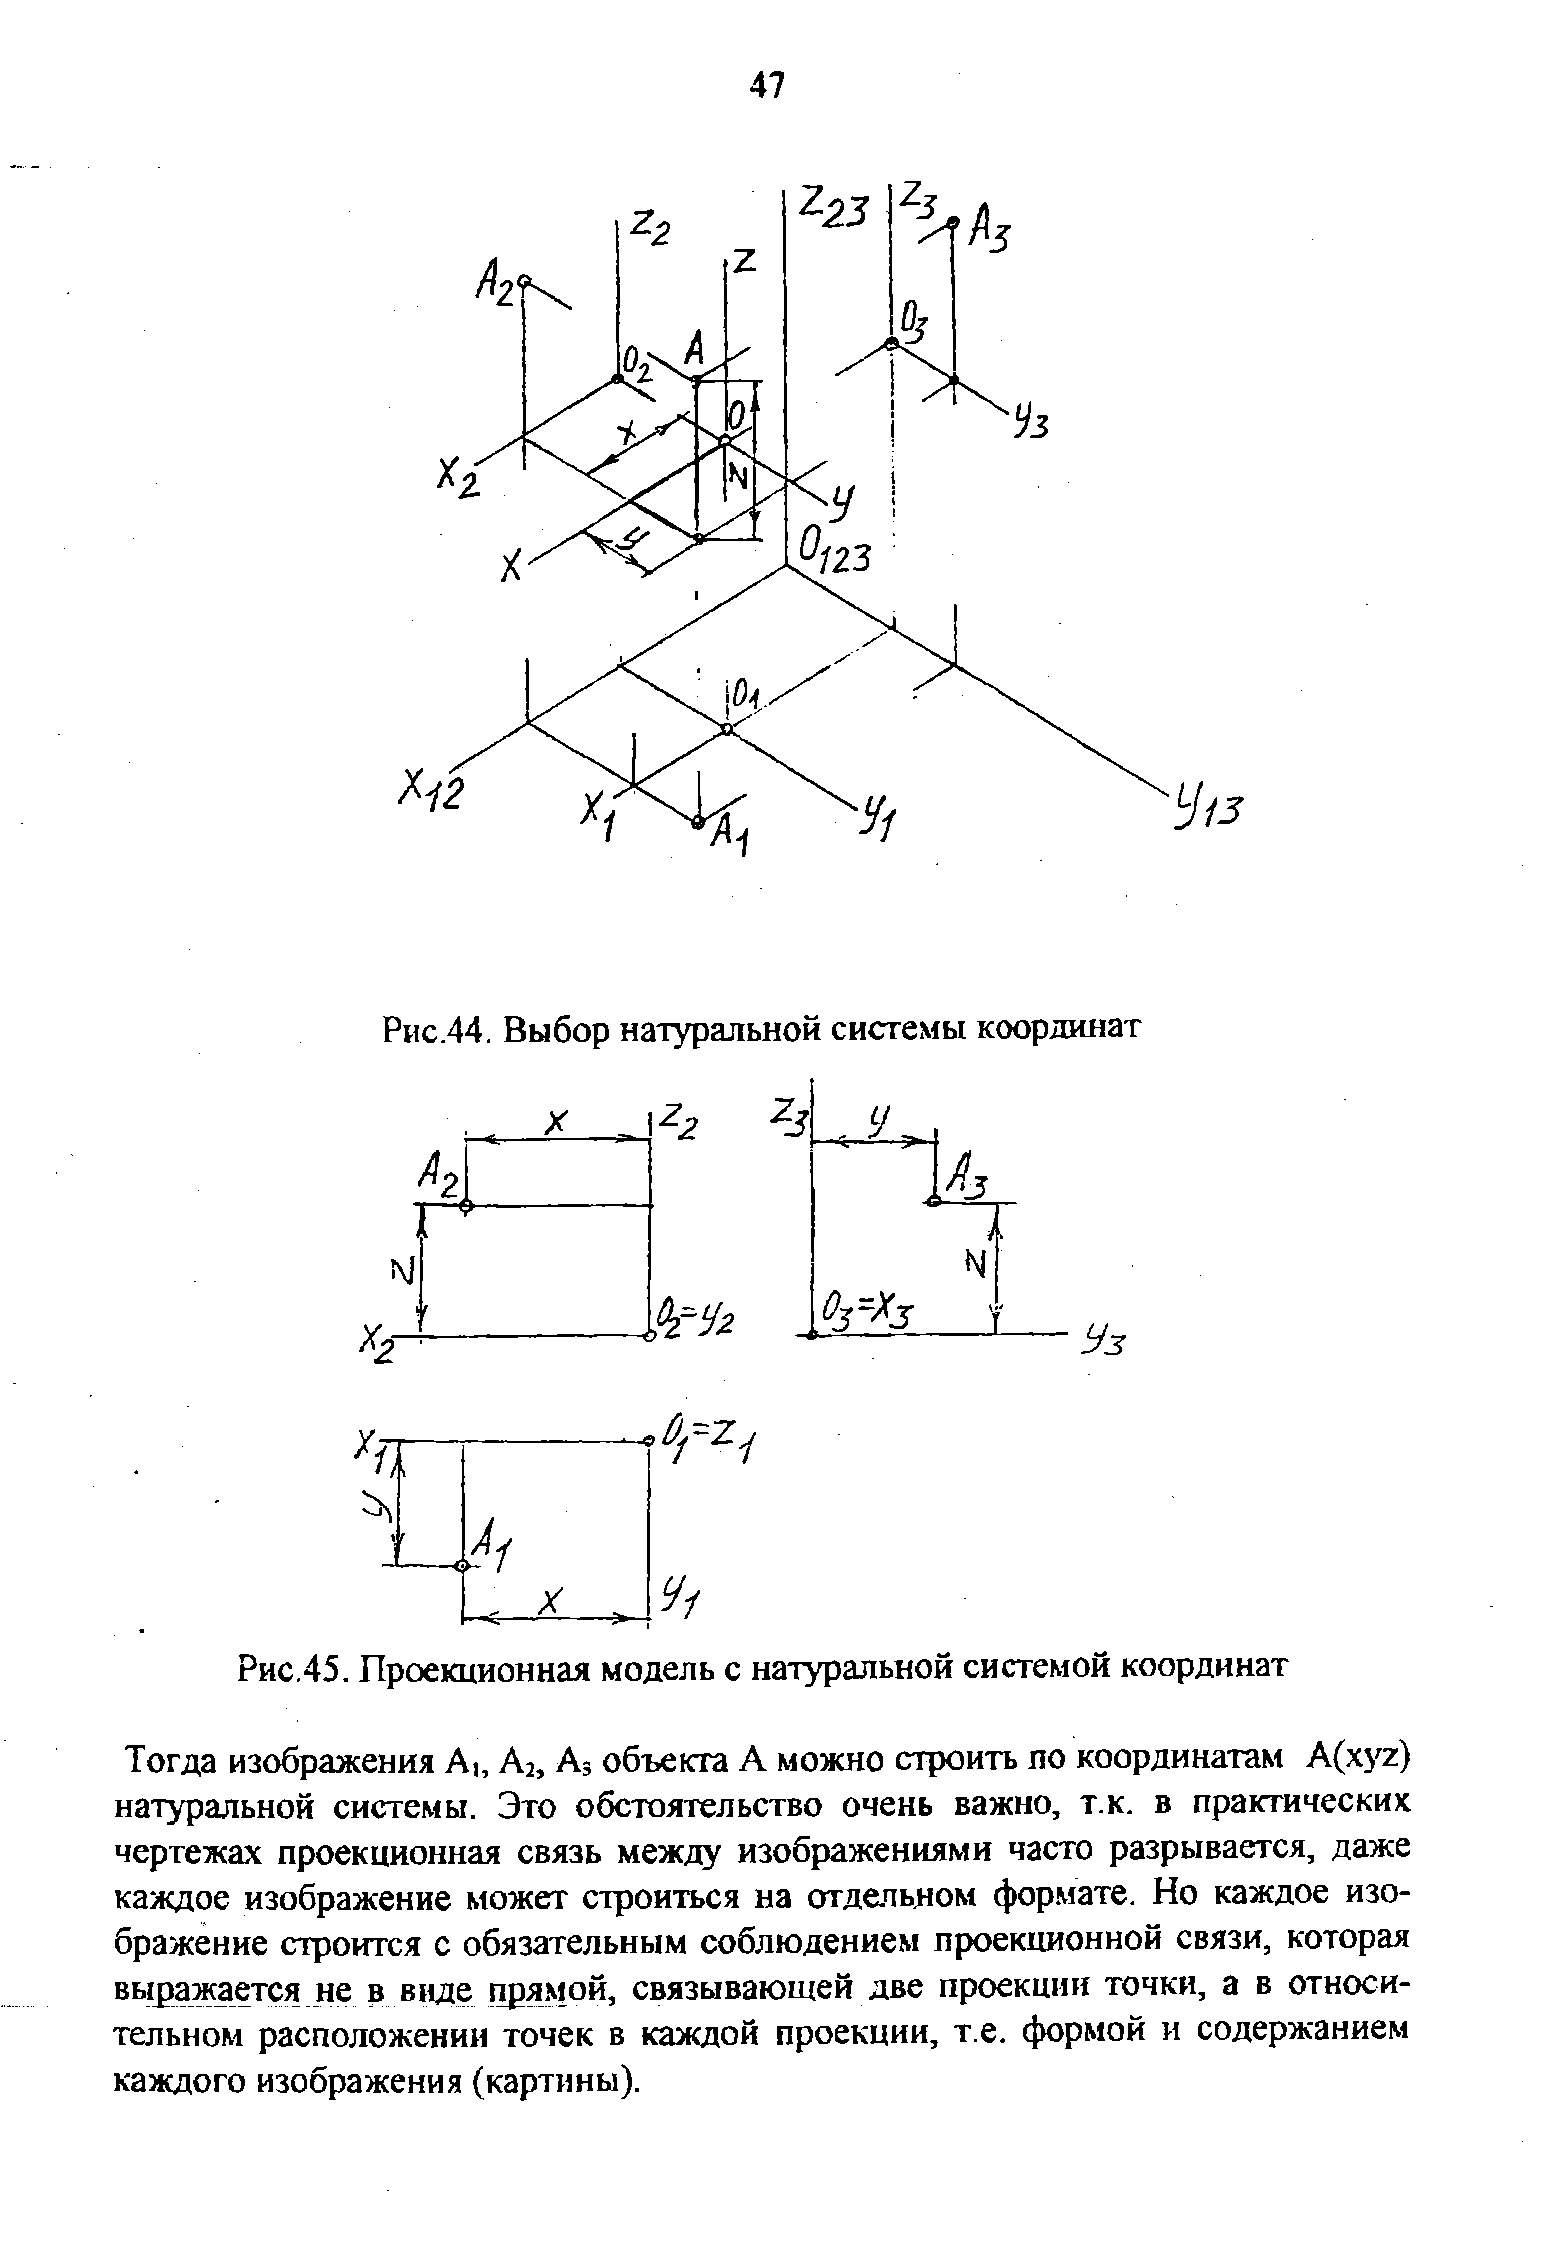 Рис.45. Проекционная модель с натуральной системой координат
